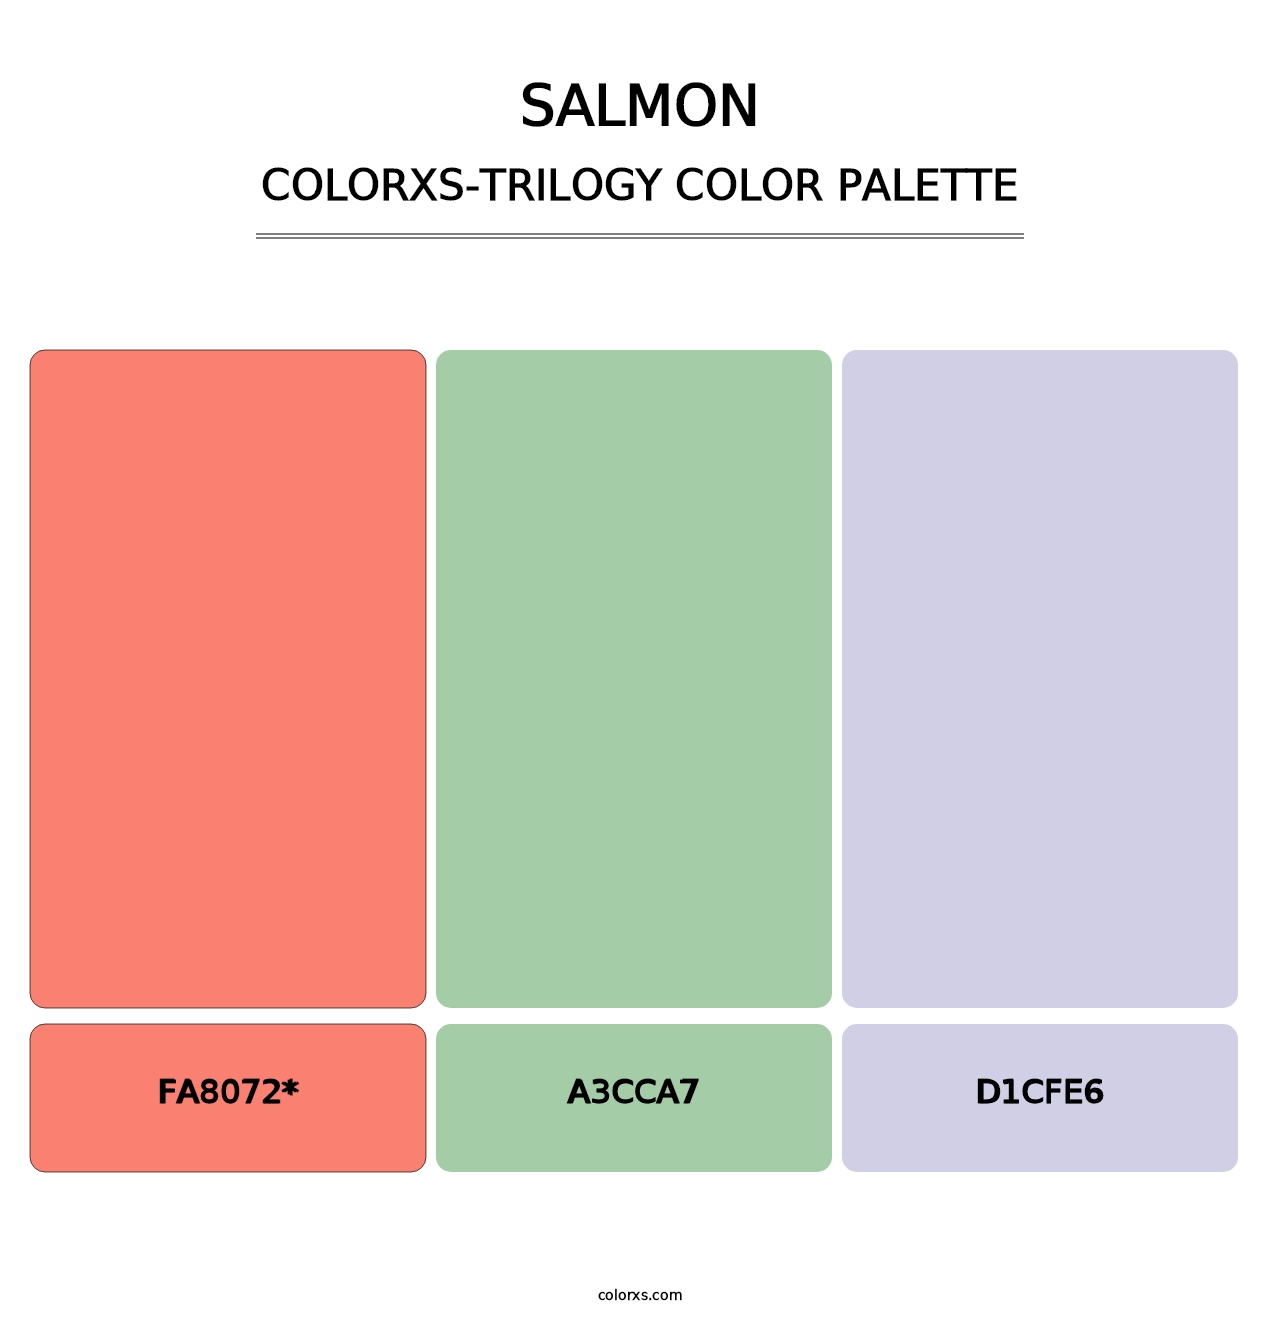 Salmon - Colorxs Trilogy Palette